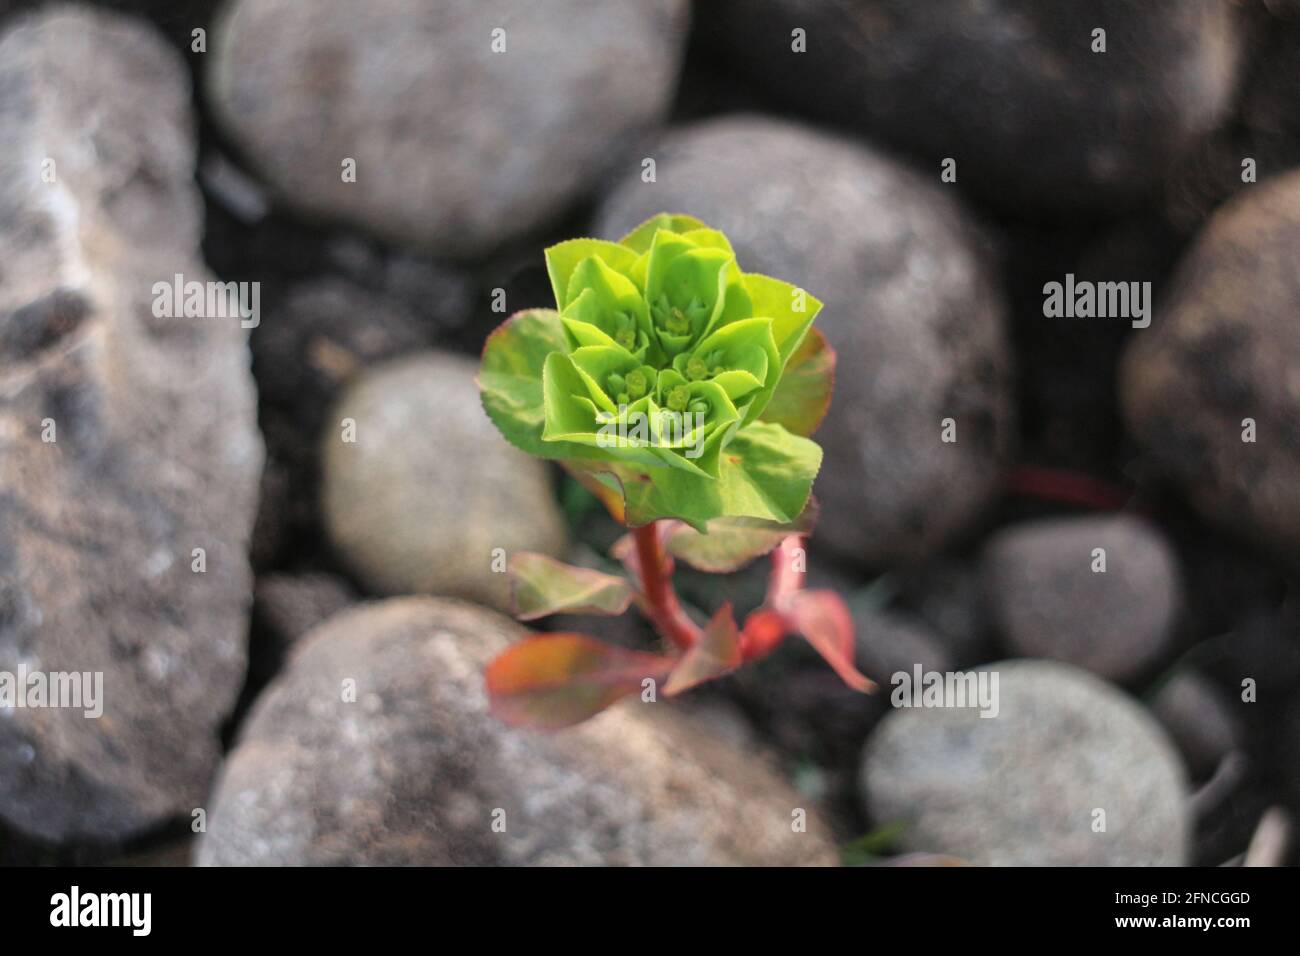 La pianta verde cresce in alto tra le pietre grigie Foto Stock